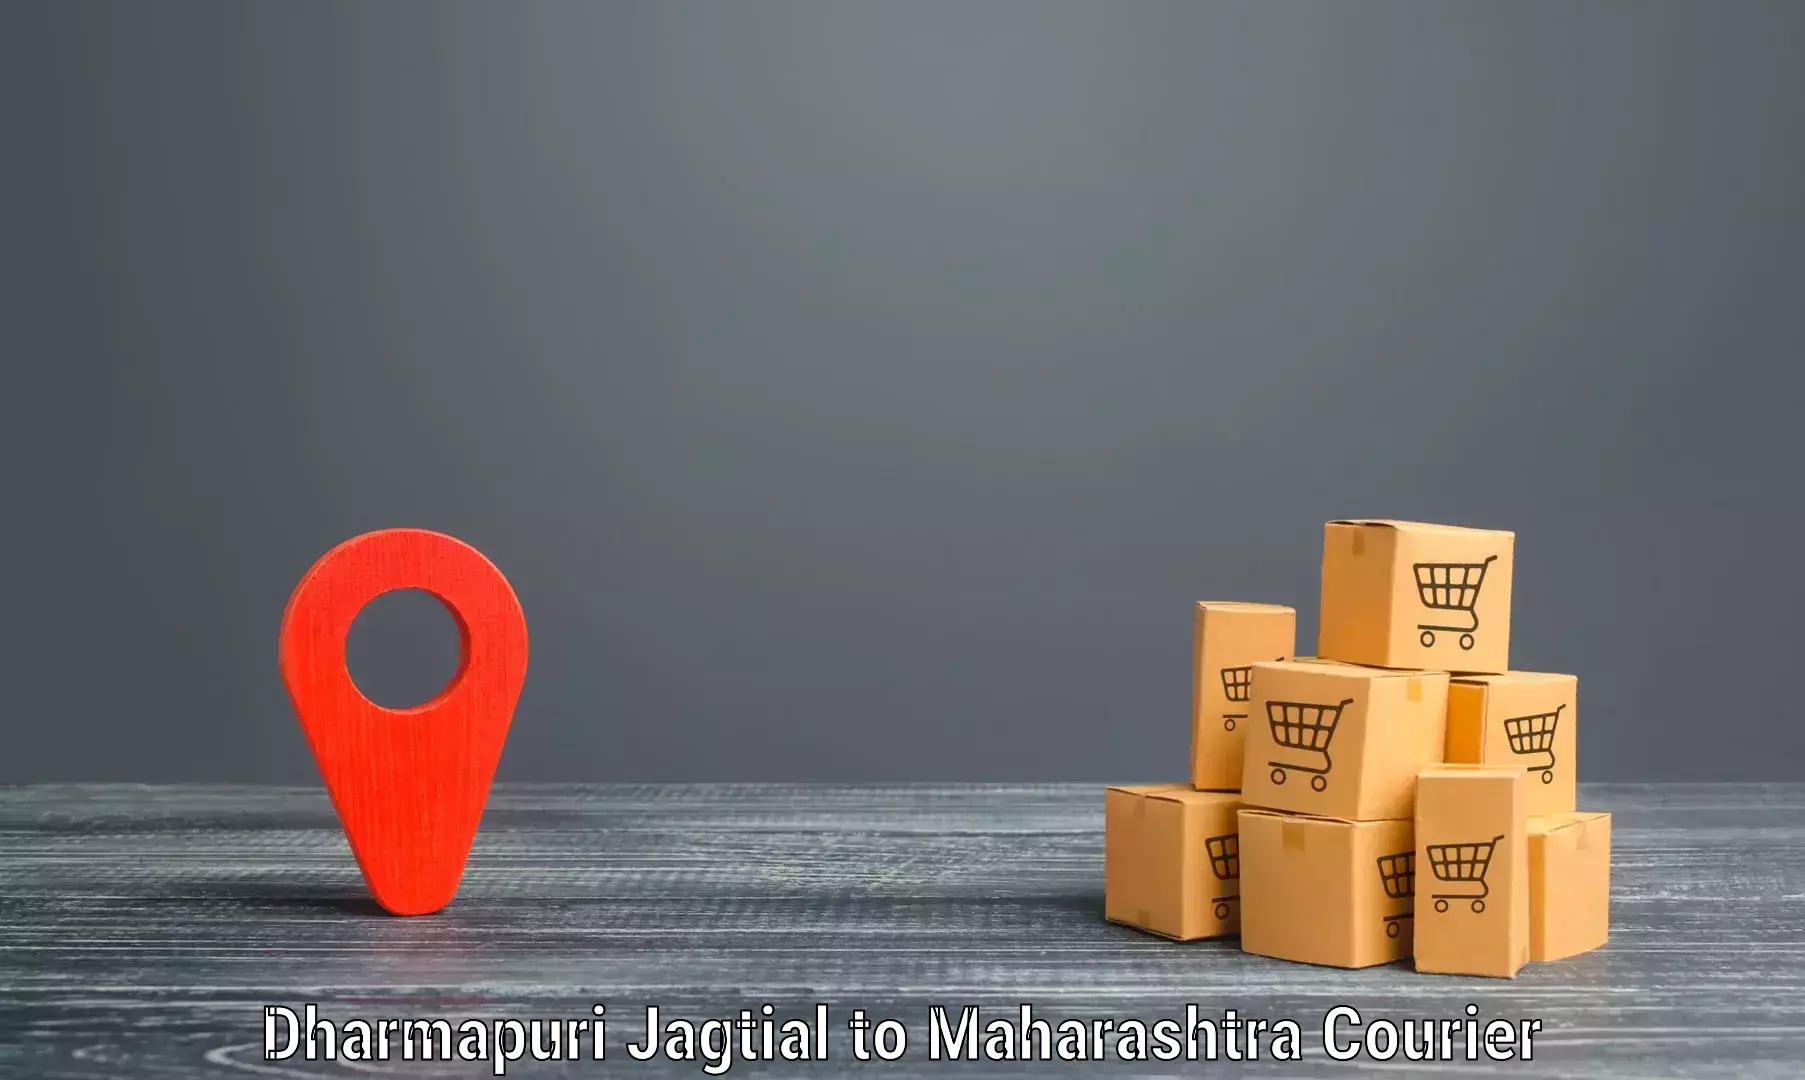 Express shipping Dharmapuri Jagtial to Dharni Amravati